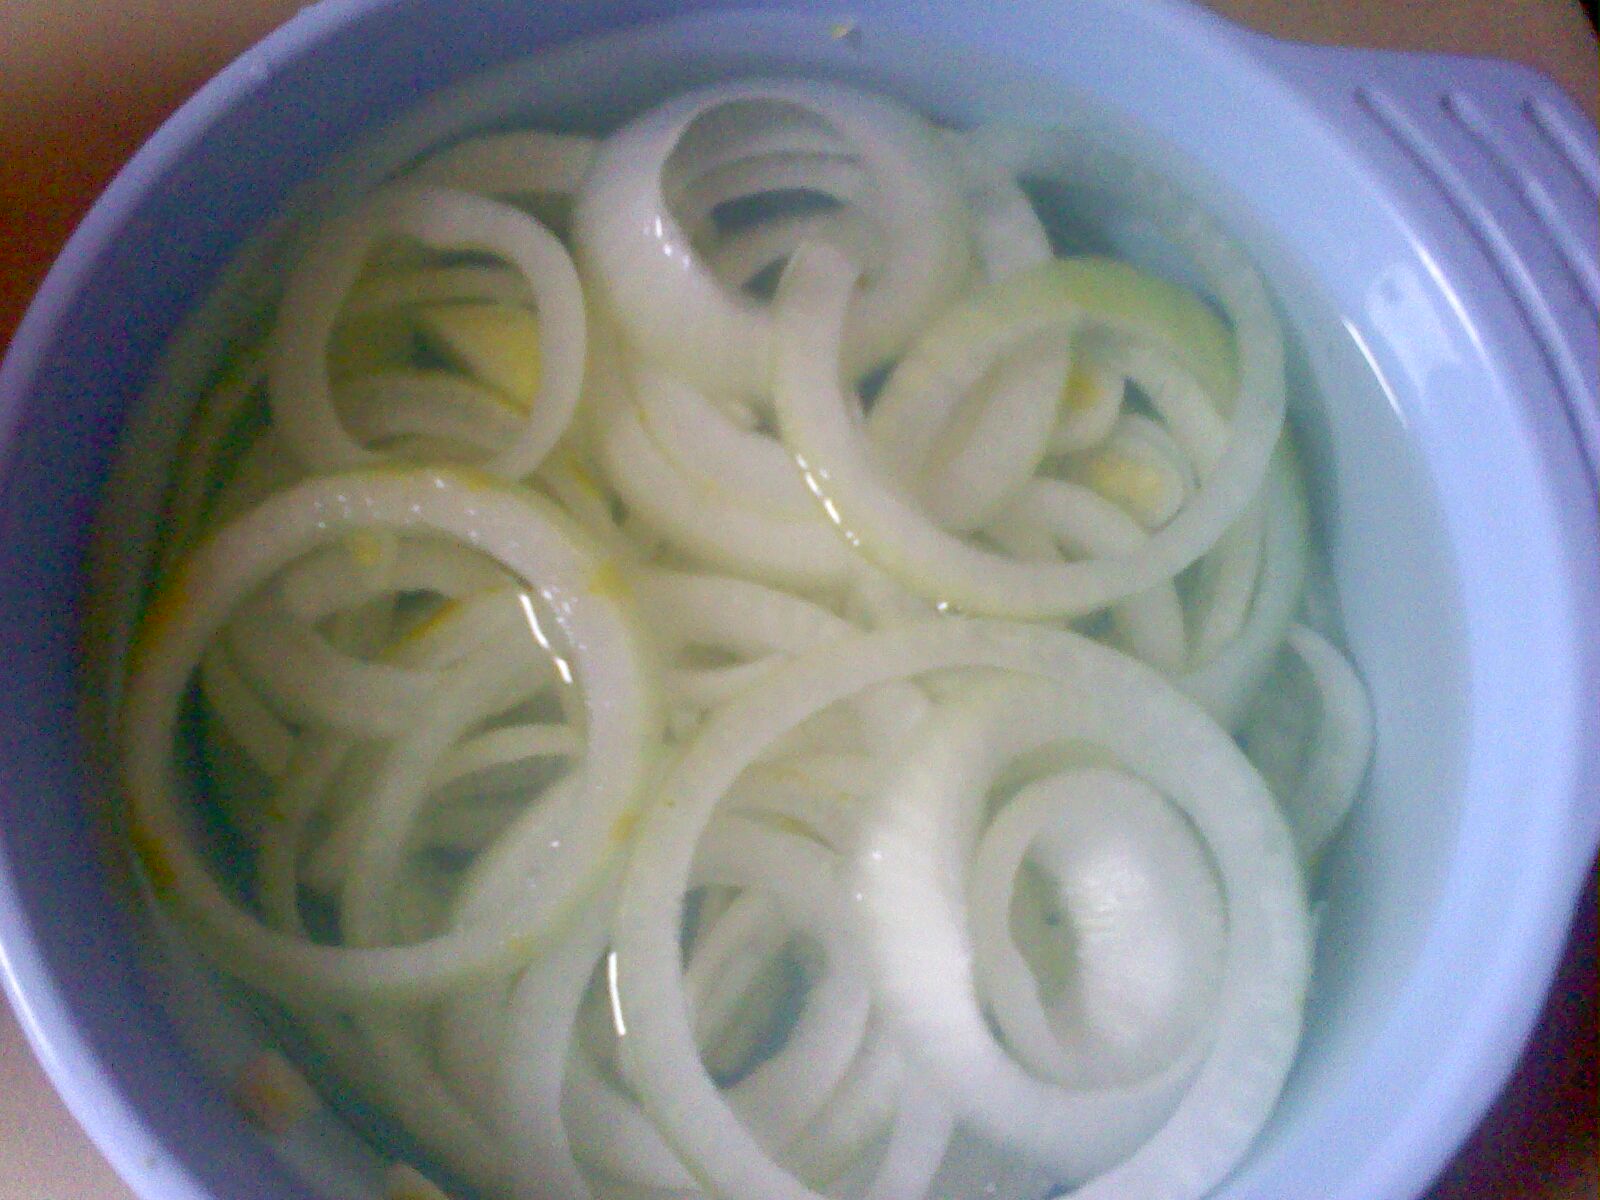 Inele de ceapa - Onion rings